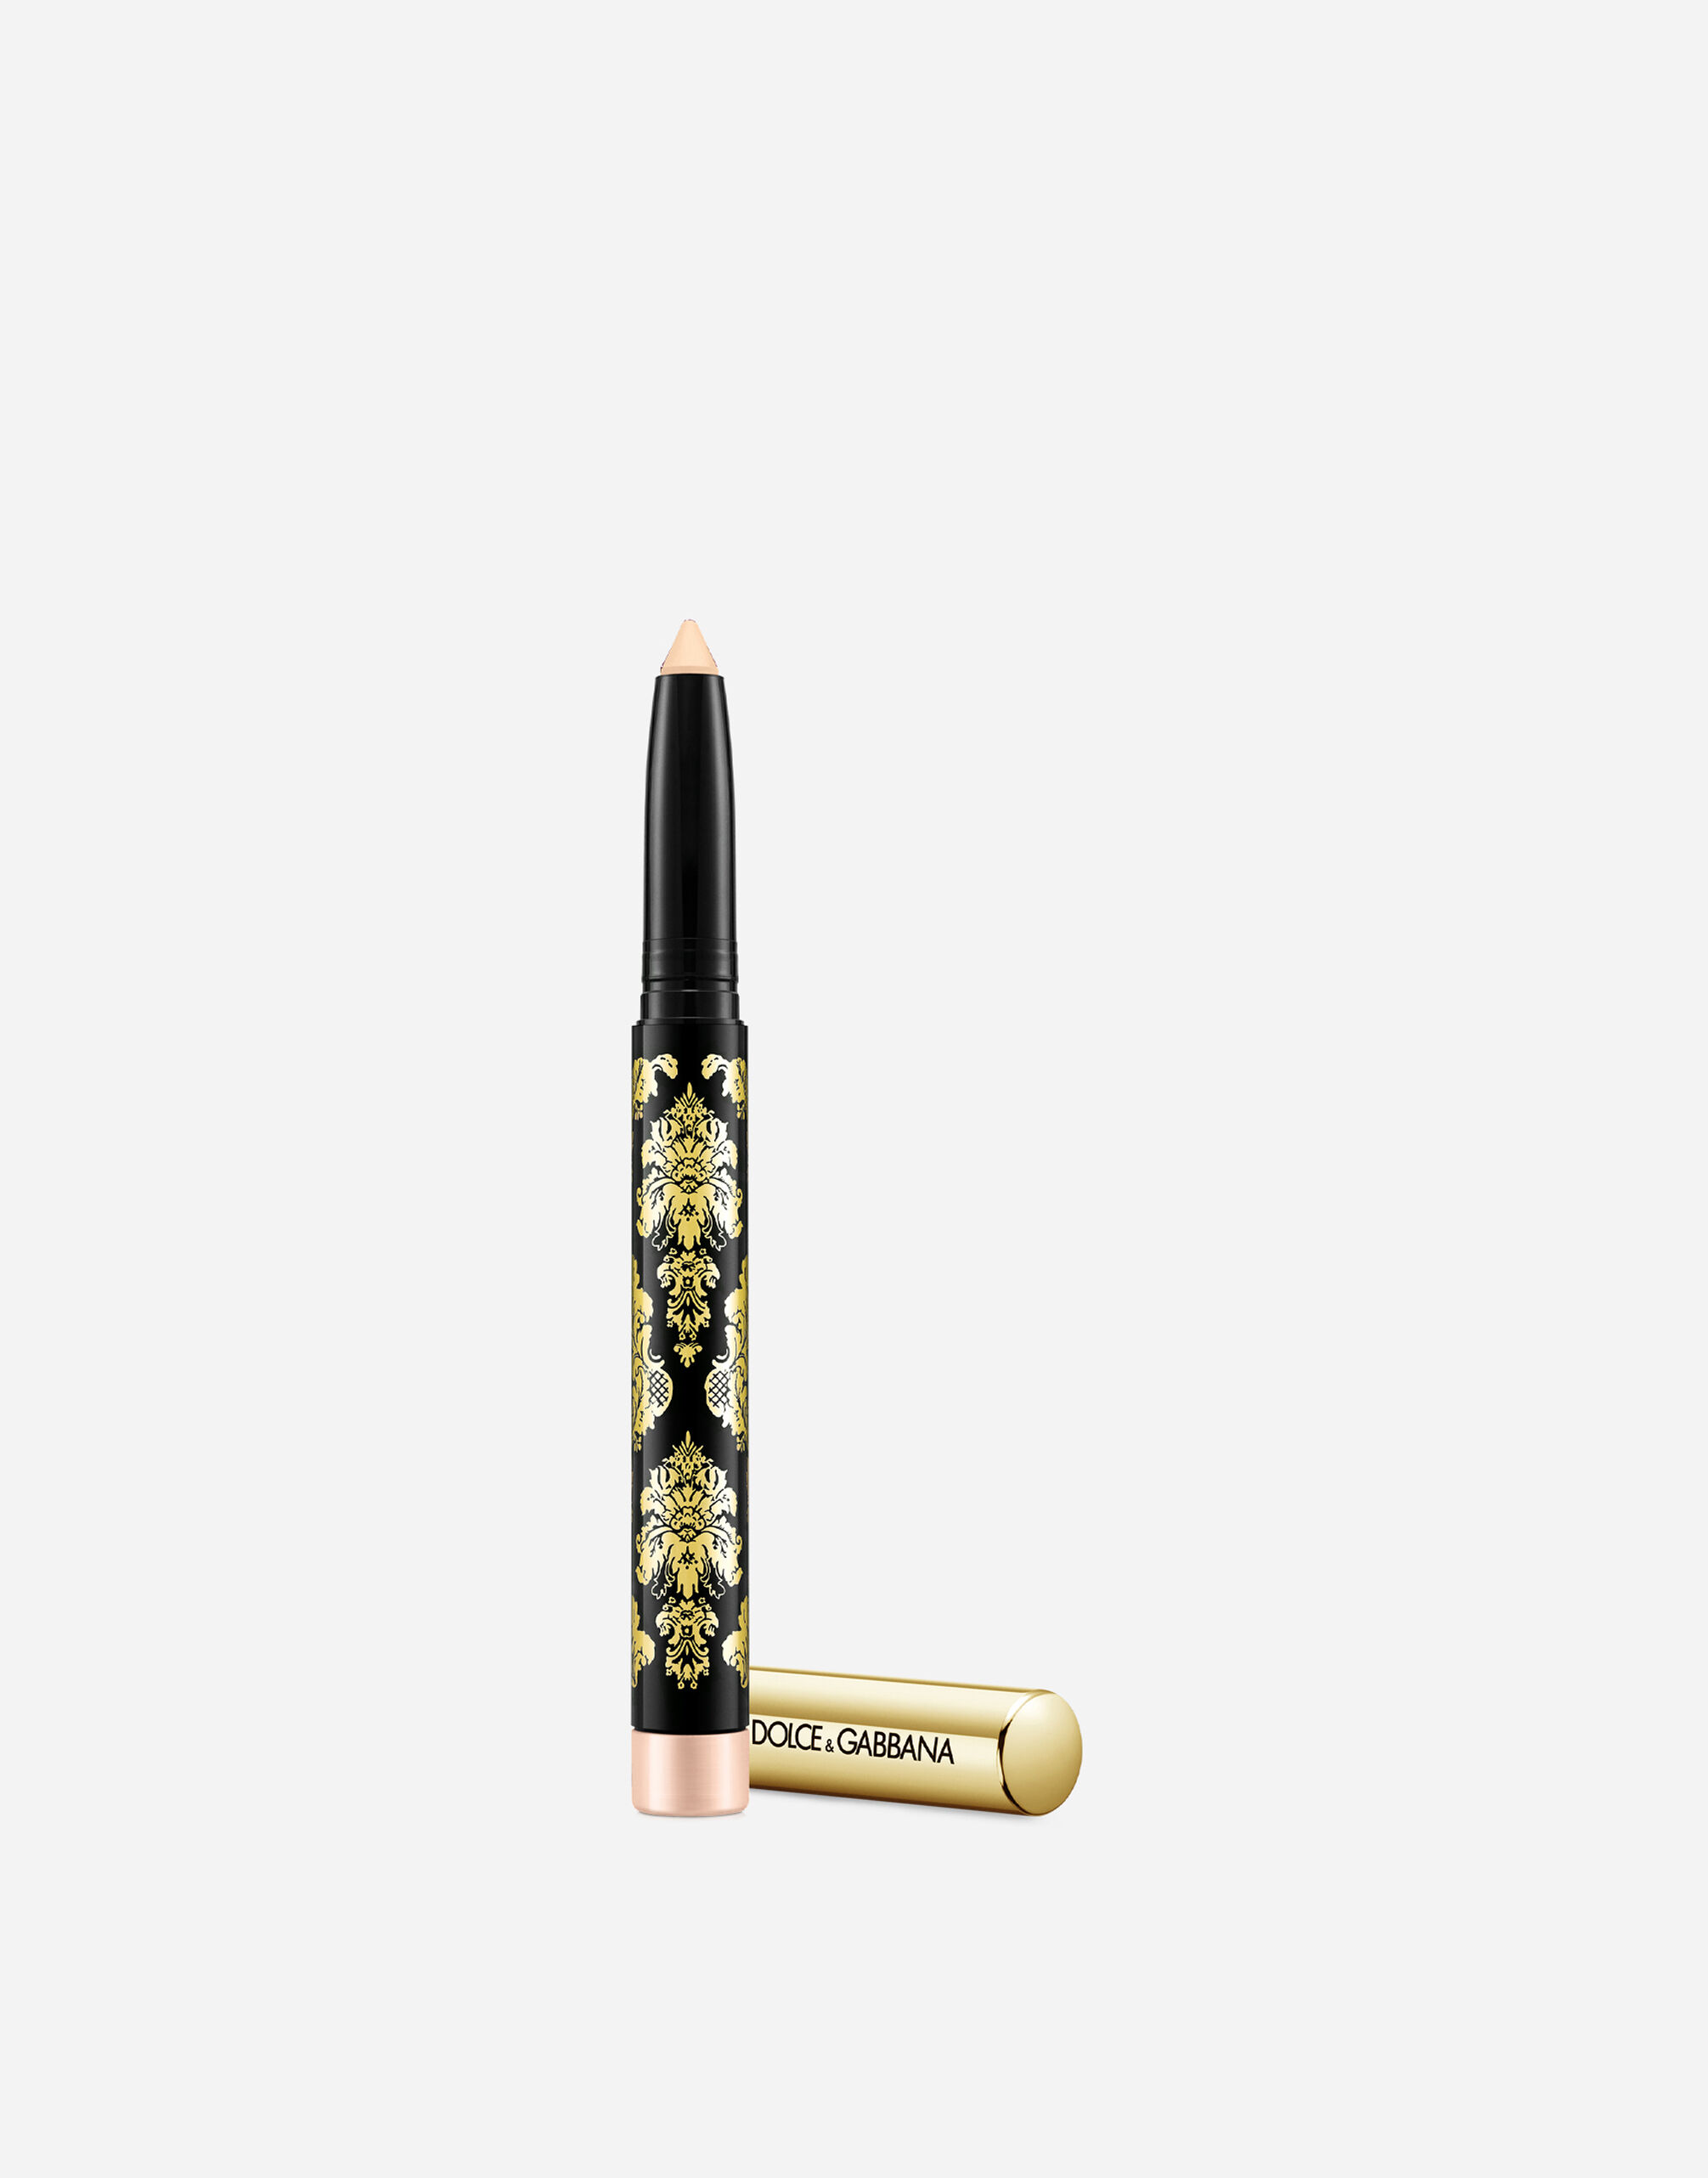 Тени-карандаш для глаз Dolce & Gabbana Intenseyes кремовые, №2 Nude, 1,4 г тени для век revolution makeup в стике stick shadow lustre wand gold flare